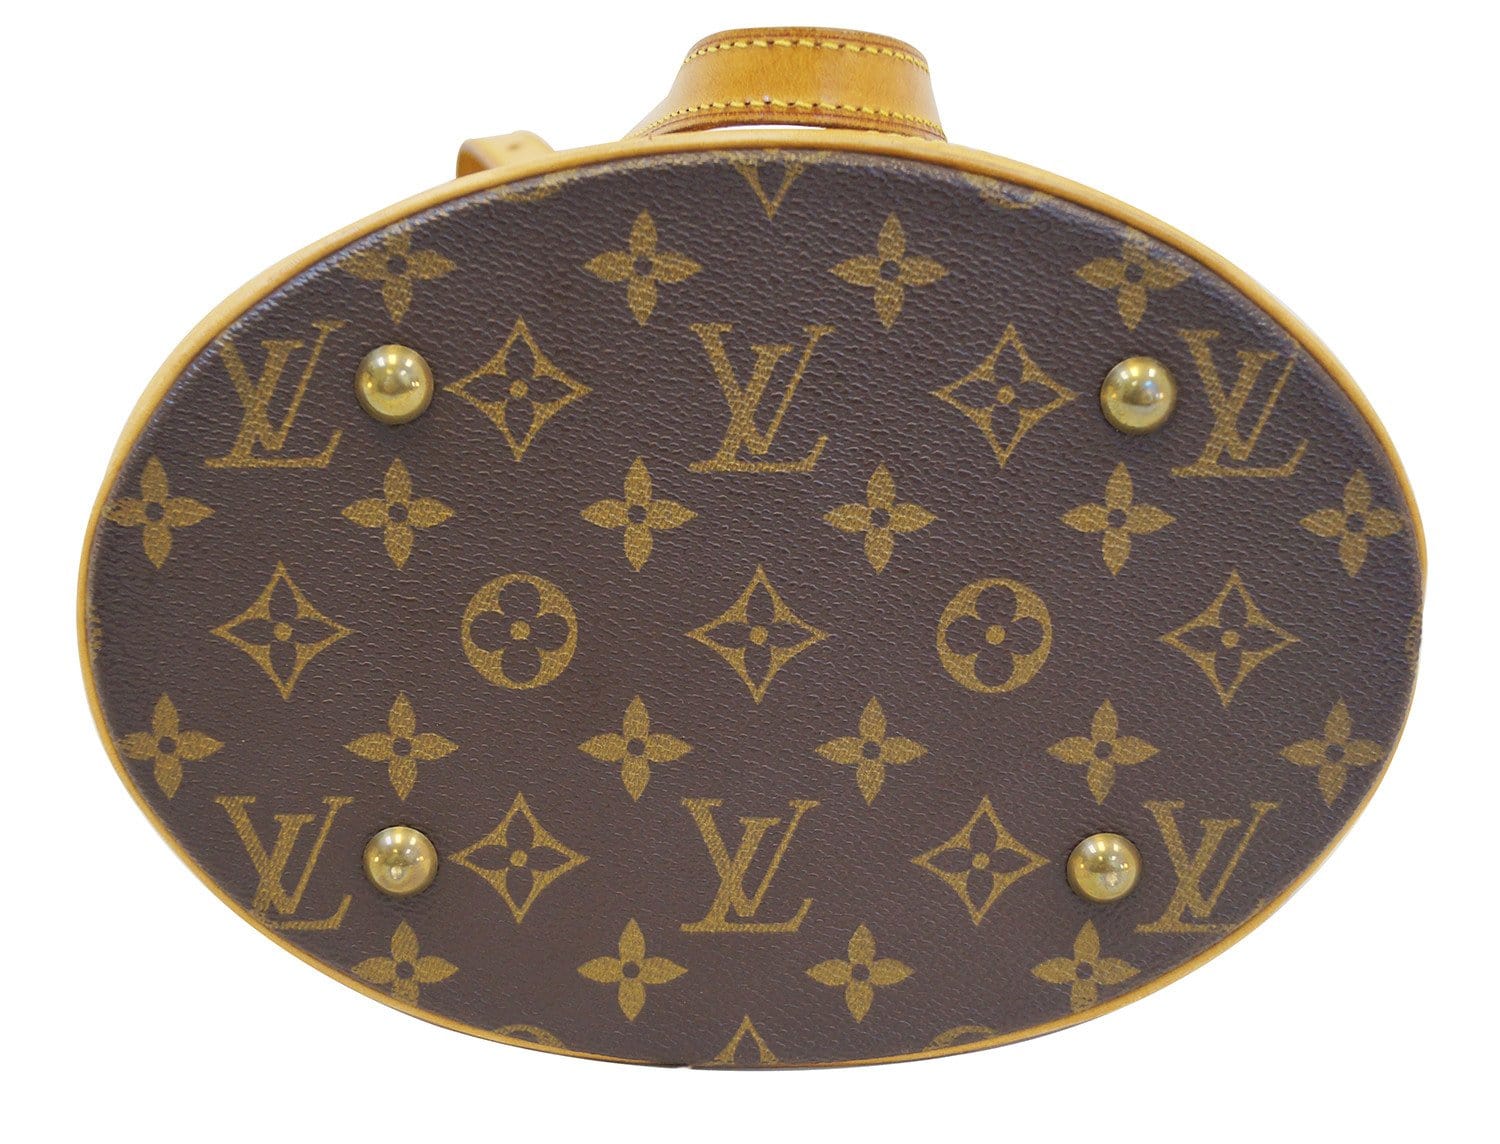 Louis Vuitton Monogram Boetie Shoulder Bag ○ Labellov ○ Buy and